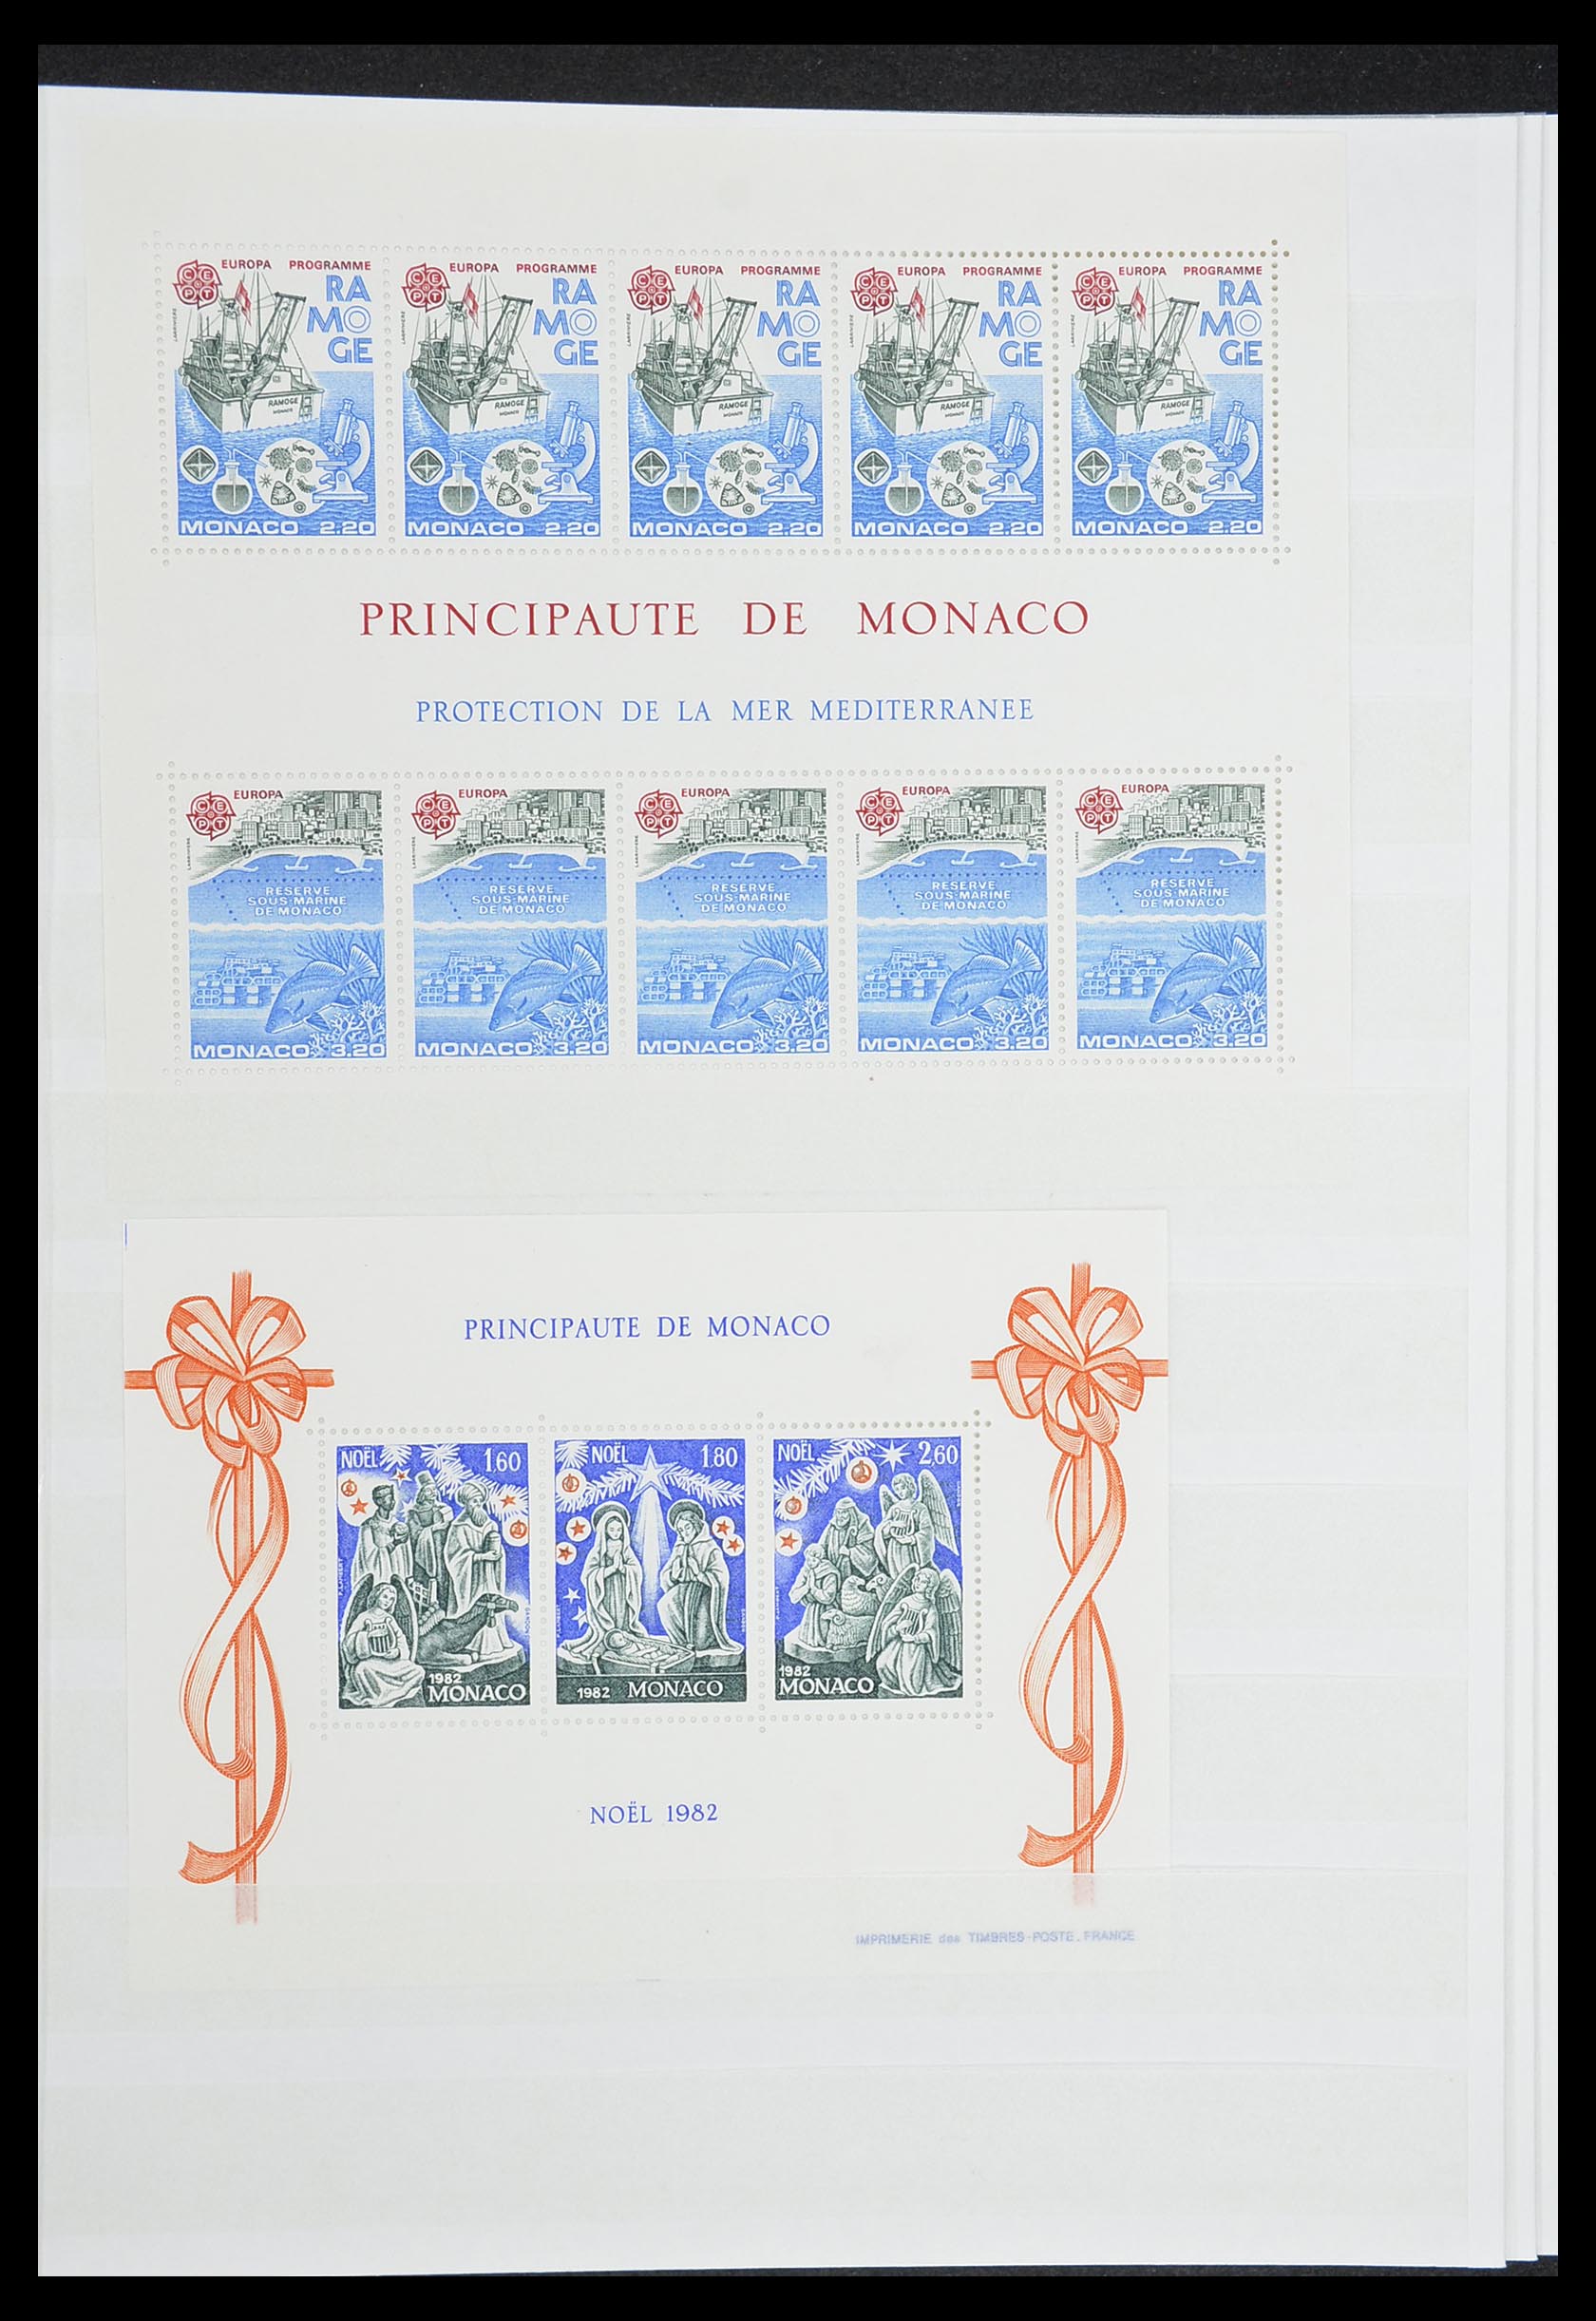 33833 007 - Stamp collection 33833 Monaco souvenir sheets 1979-2015.